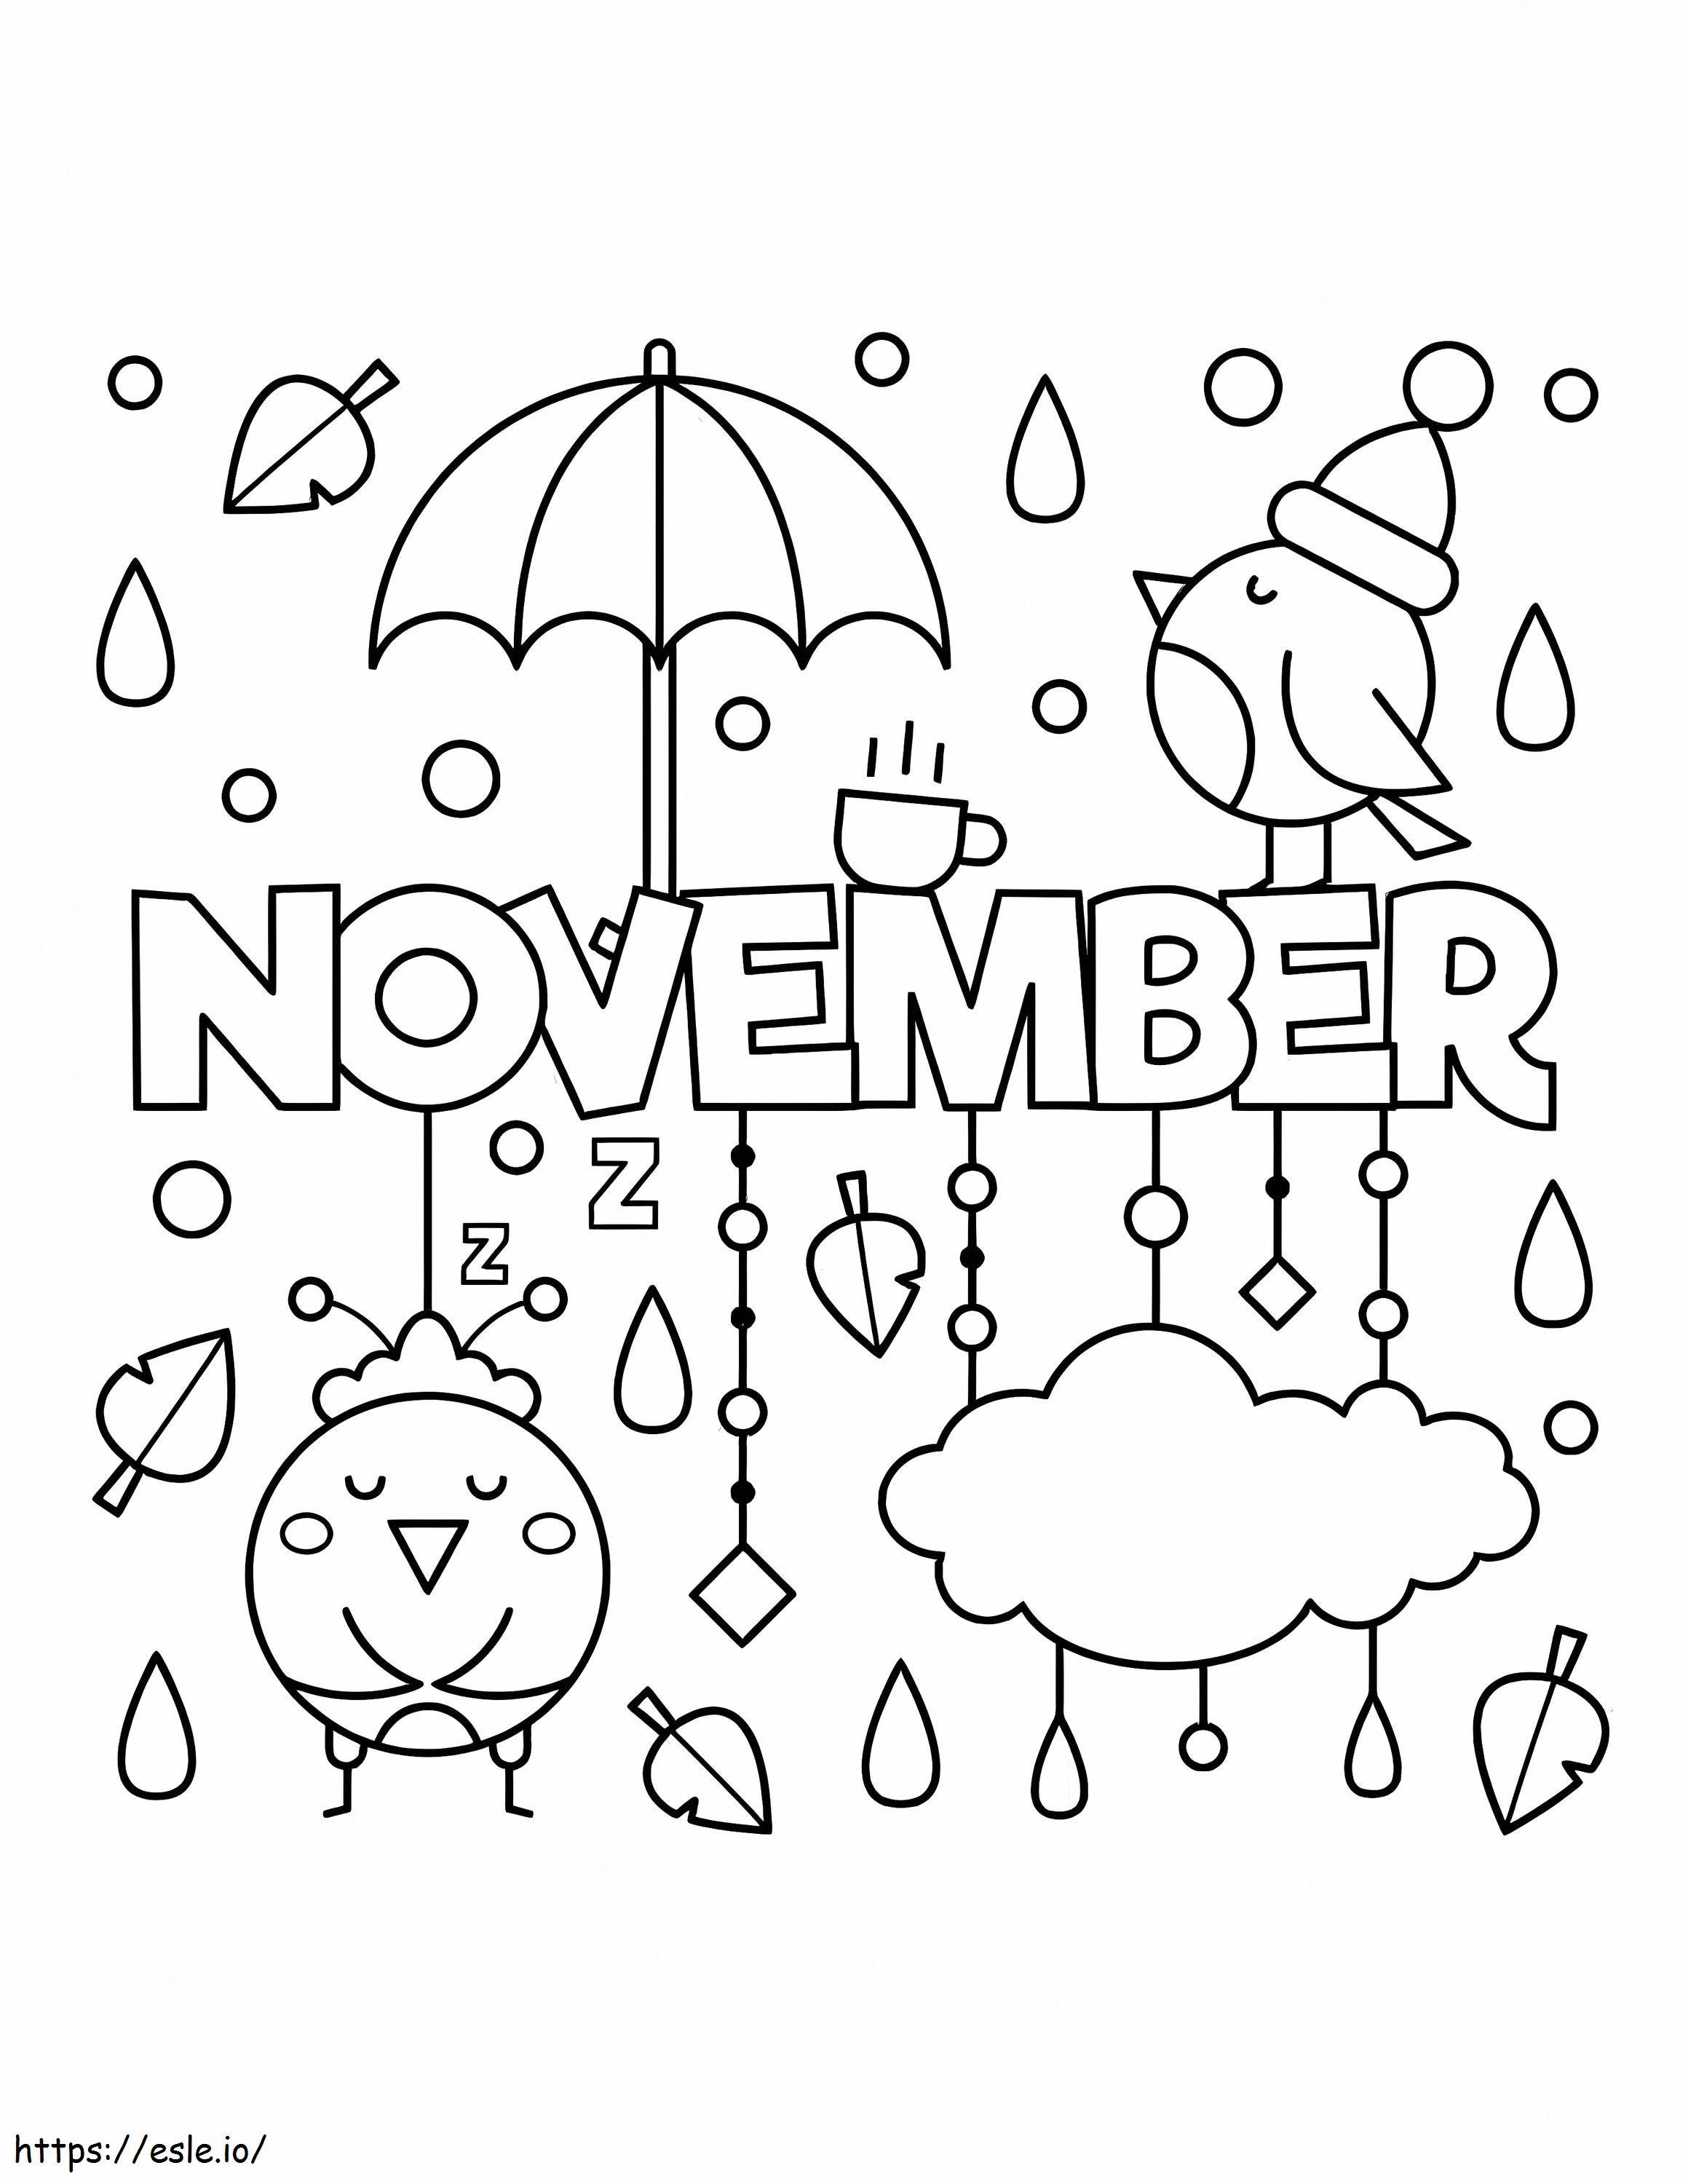 November mit Regen ausmalbilder